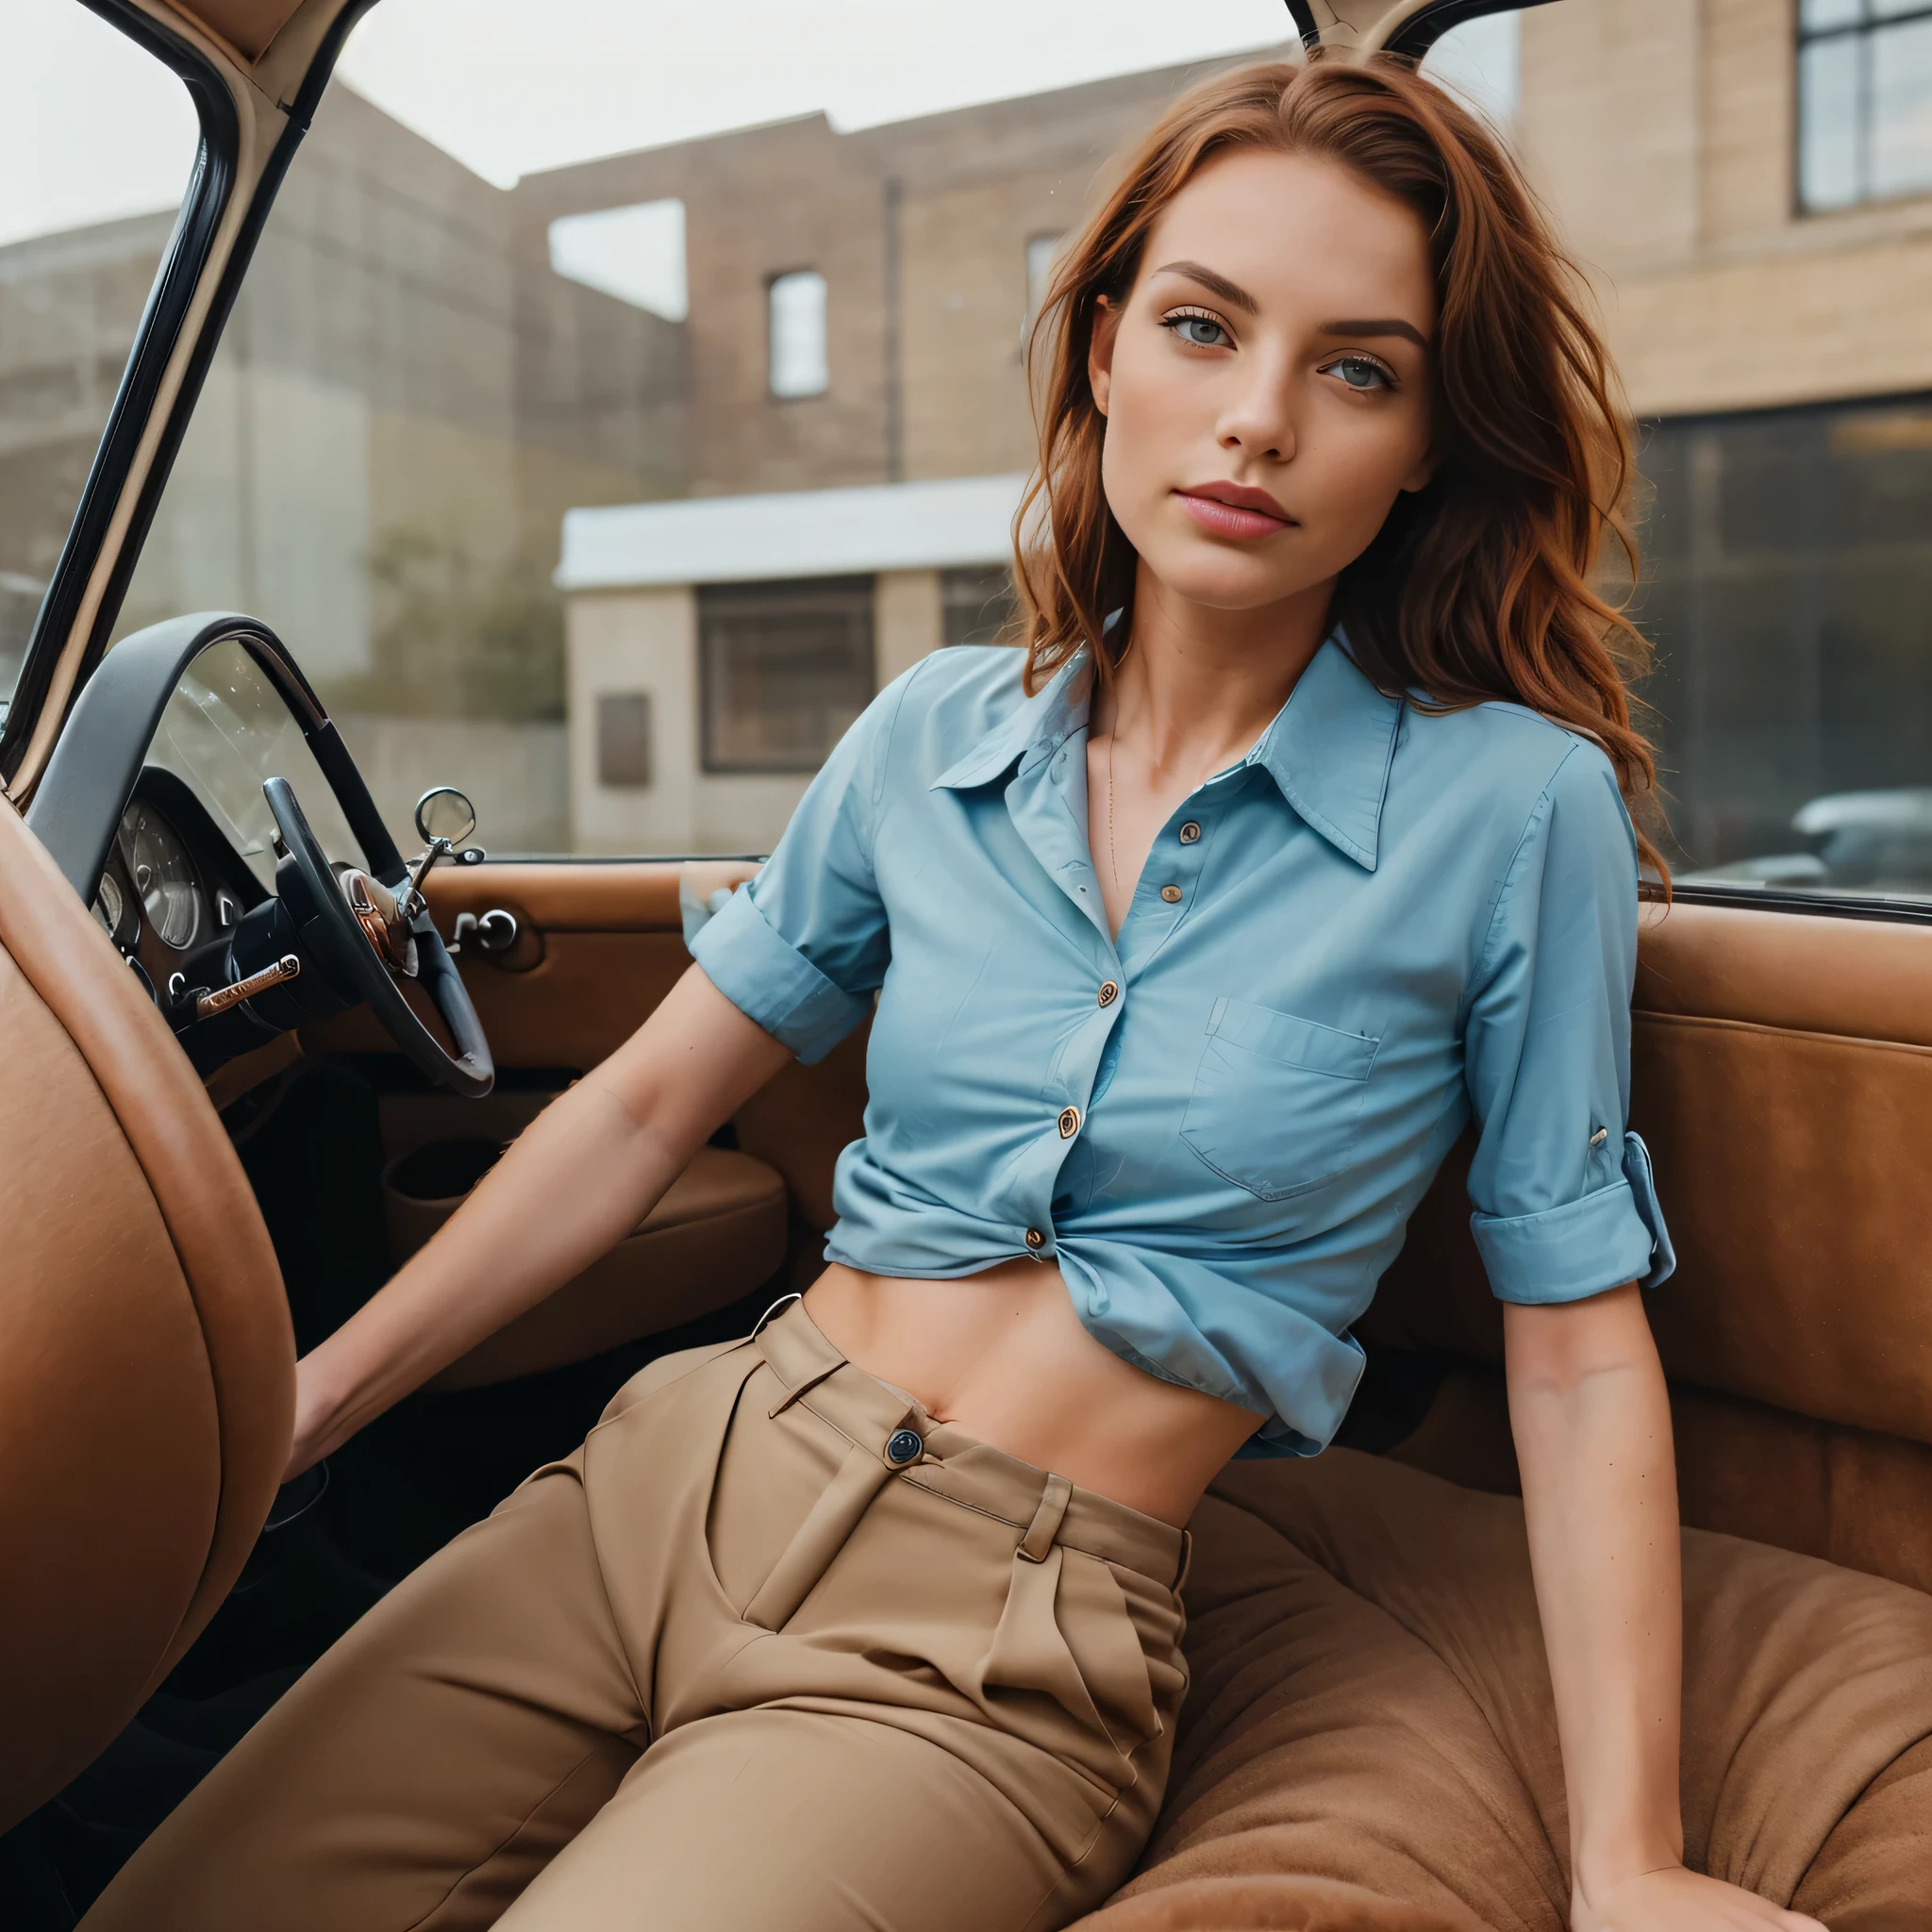 uma foto de uma mulher sedutora com cabelo ruivo solto, posando na traseira de um carro antigo, ela está vestindo camisa e calças de botão, detalhes intrincados, arrepio, rosto impecável, tímido, prude, (sardas claras:0.9), ((fotorrealista):1.2), CRU